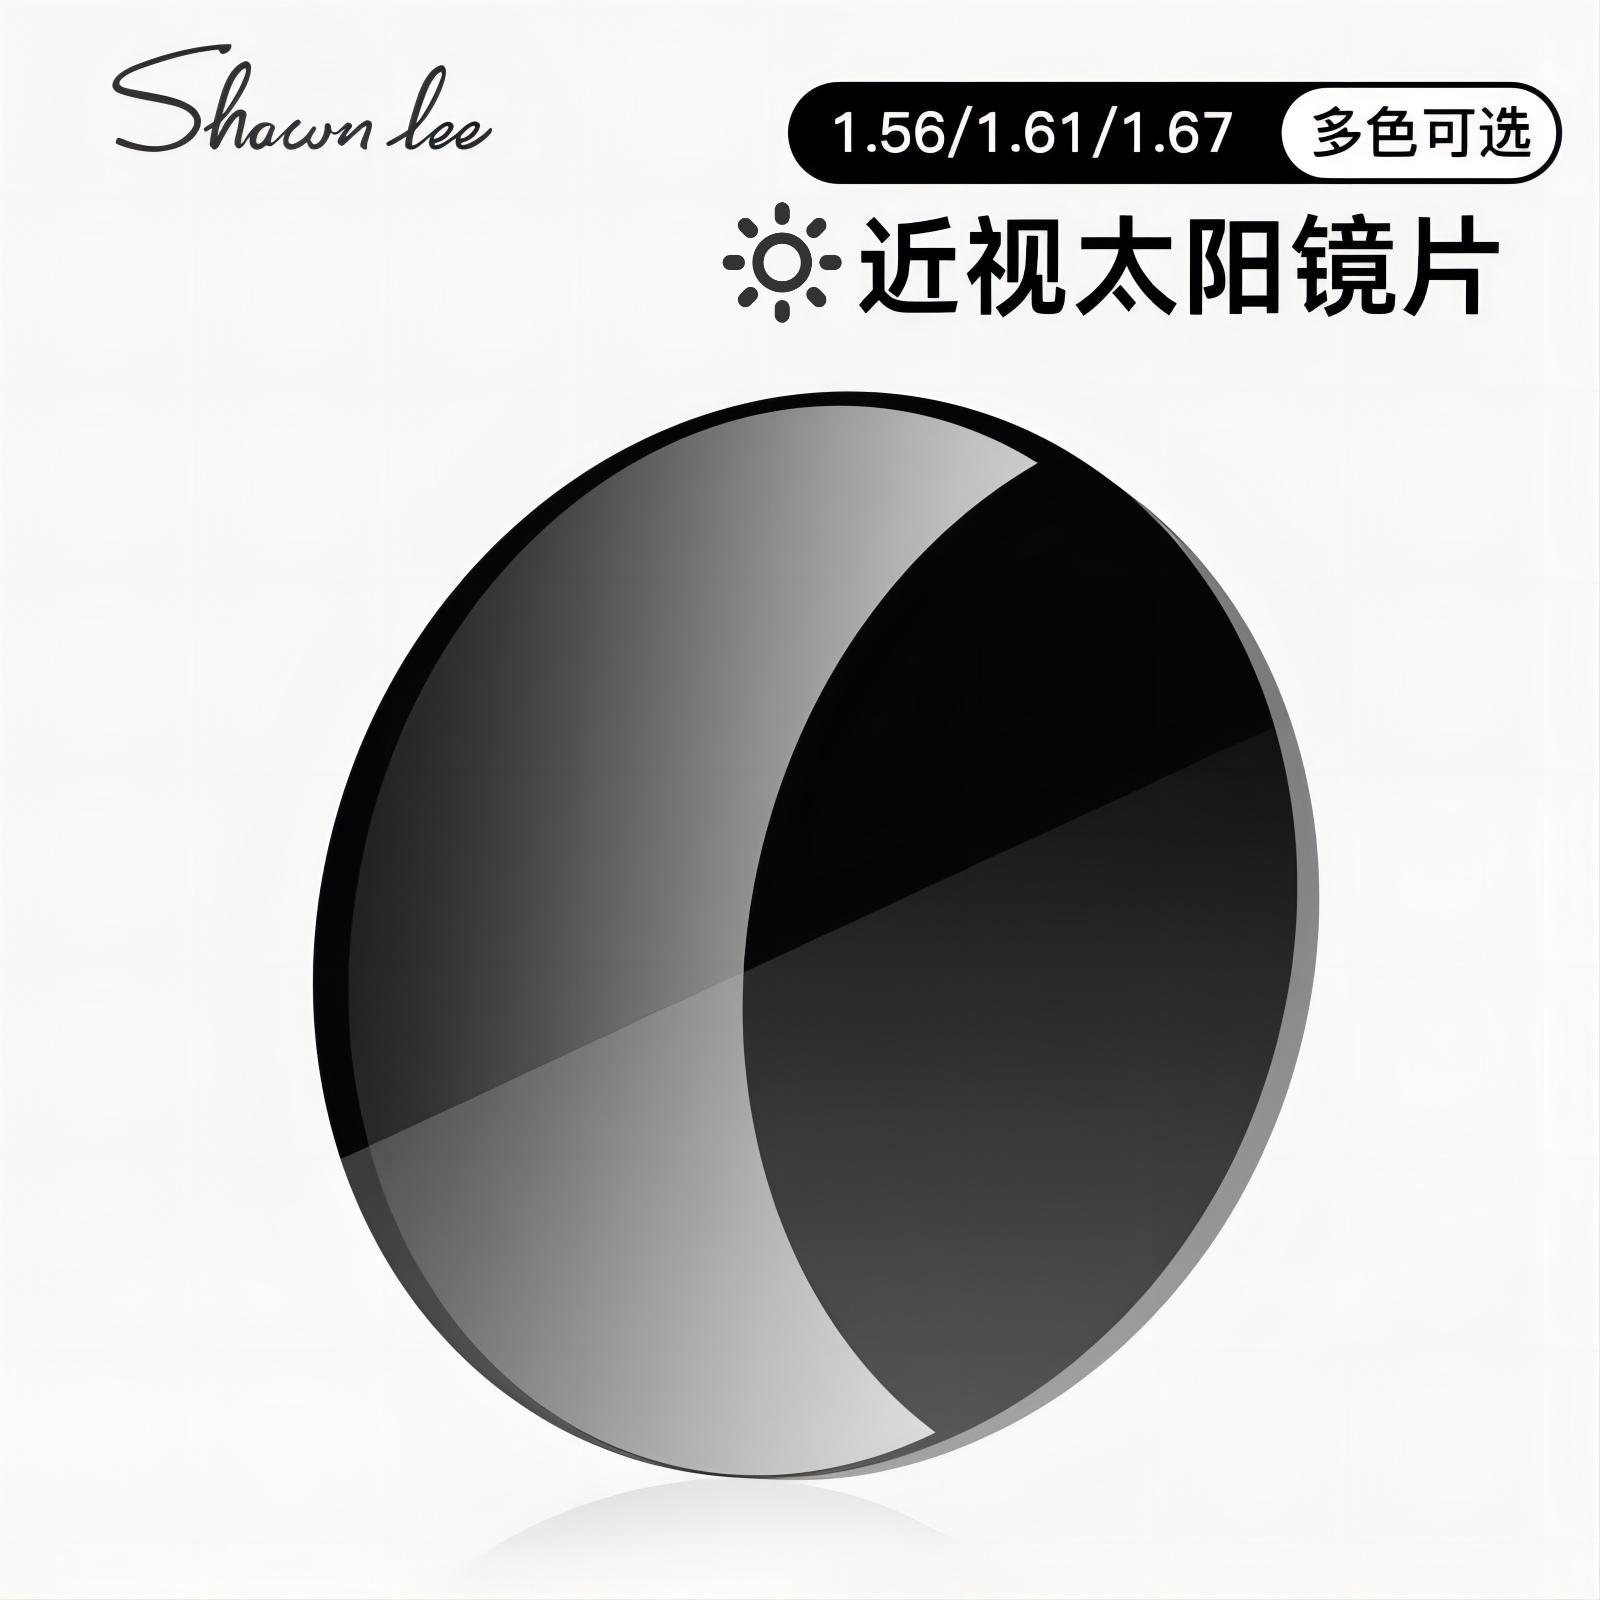 Shawnlee近视配度数高清尼龙墨镜镜片染色定制颜色1.56 1.61 1.67